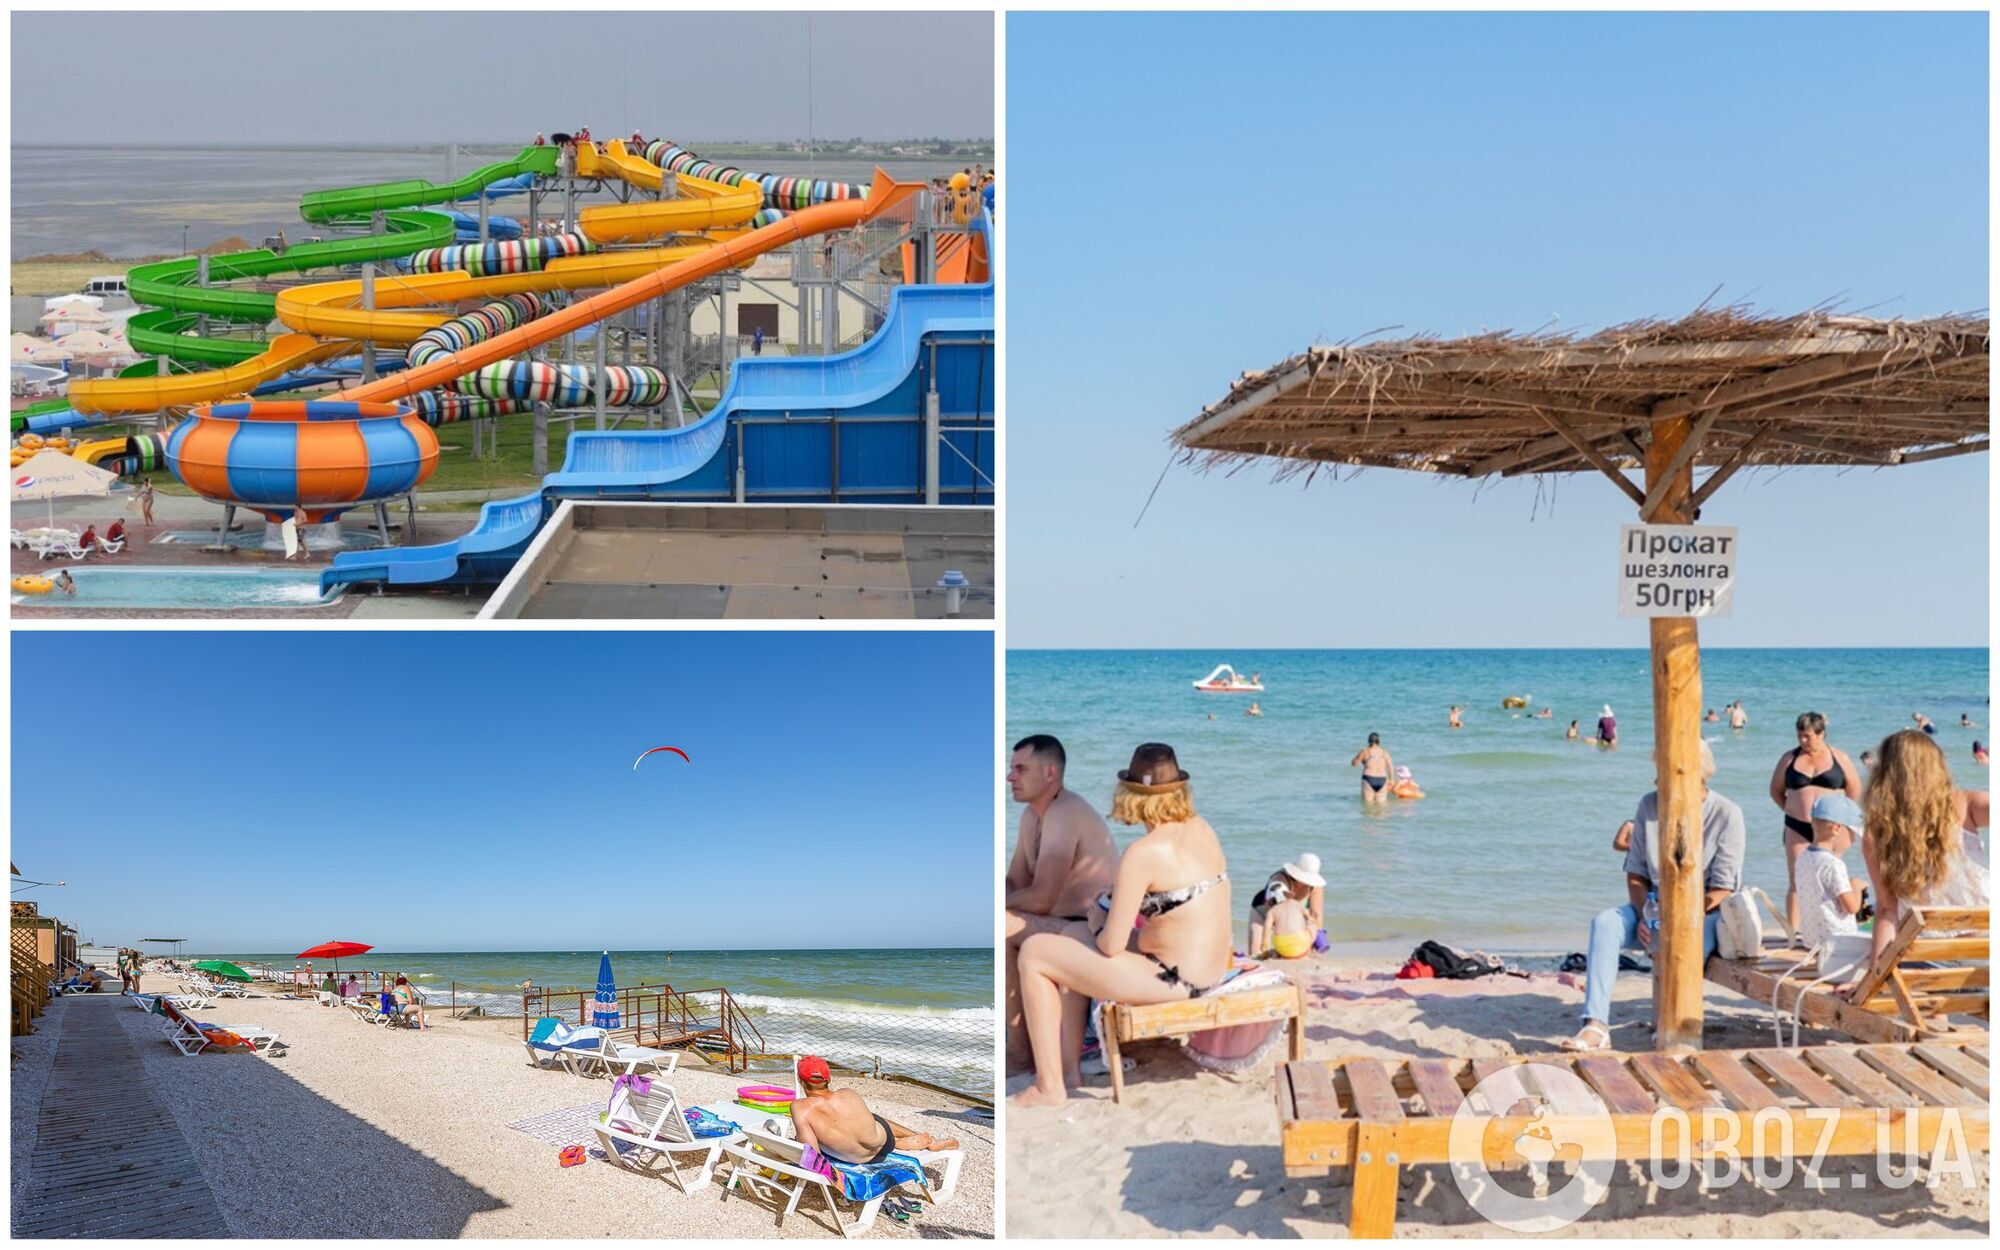 Кирилівка – один із найпопулярніших напрямків морського відпочинку в країні